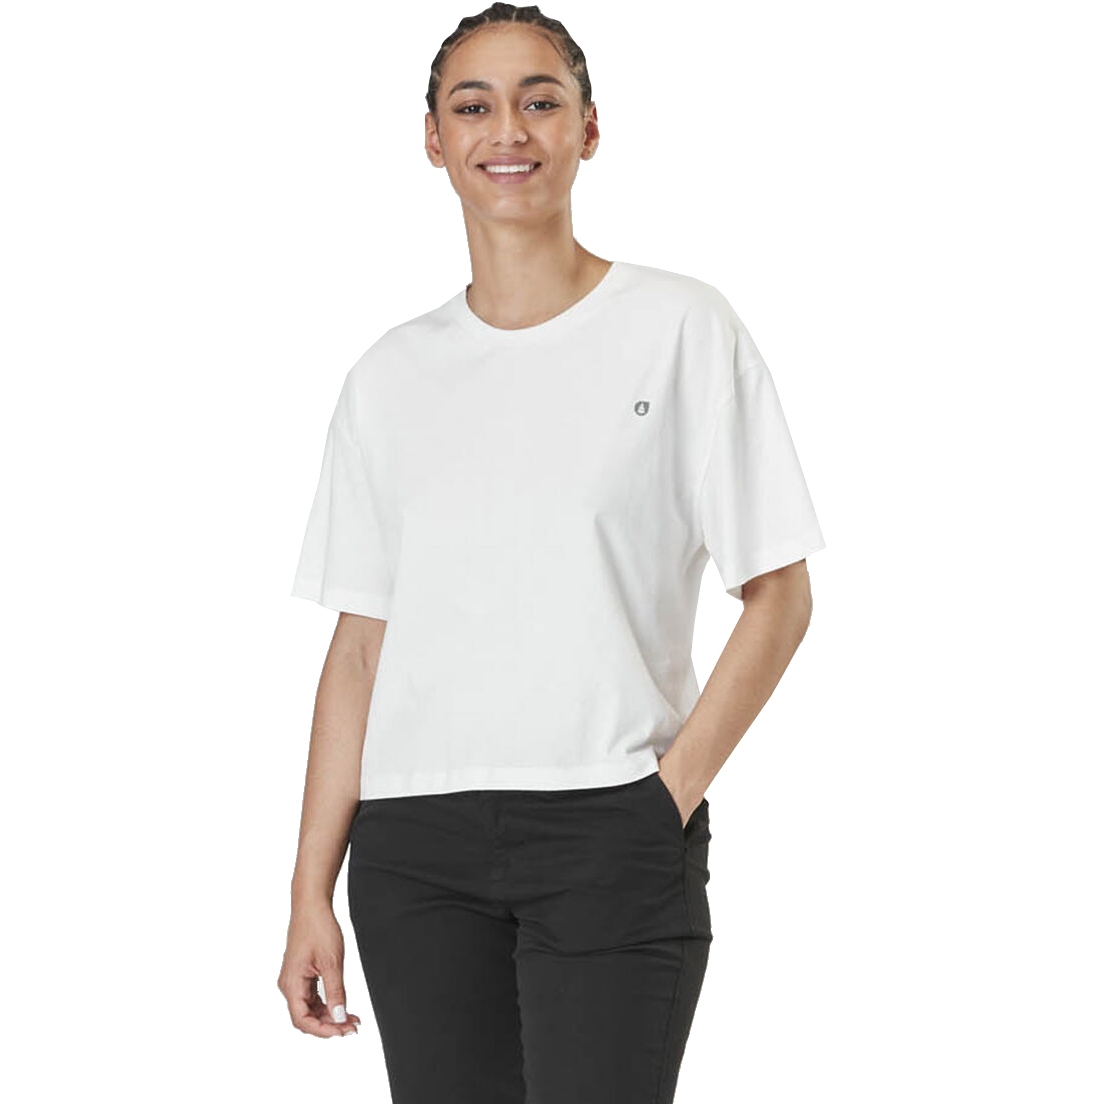 Produktbild von Picture Keynee T-Shirt Damen - Weiß